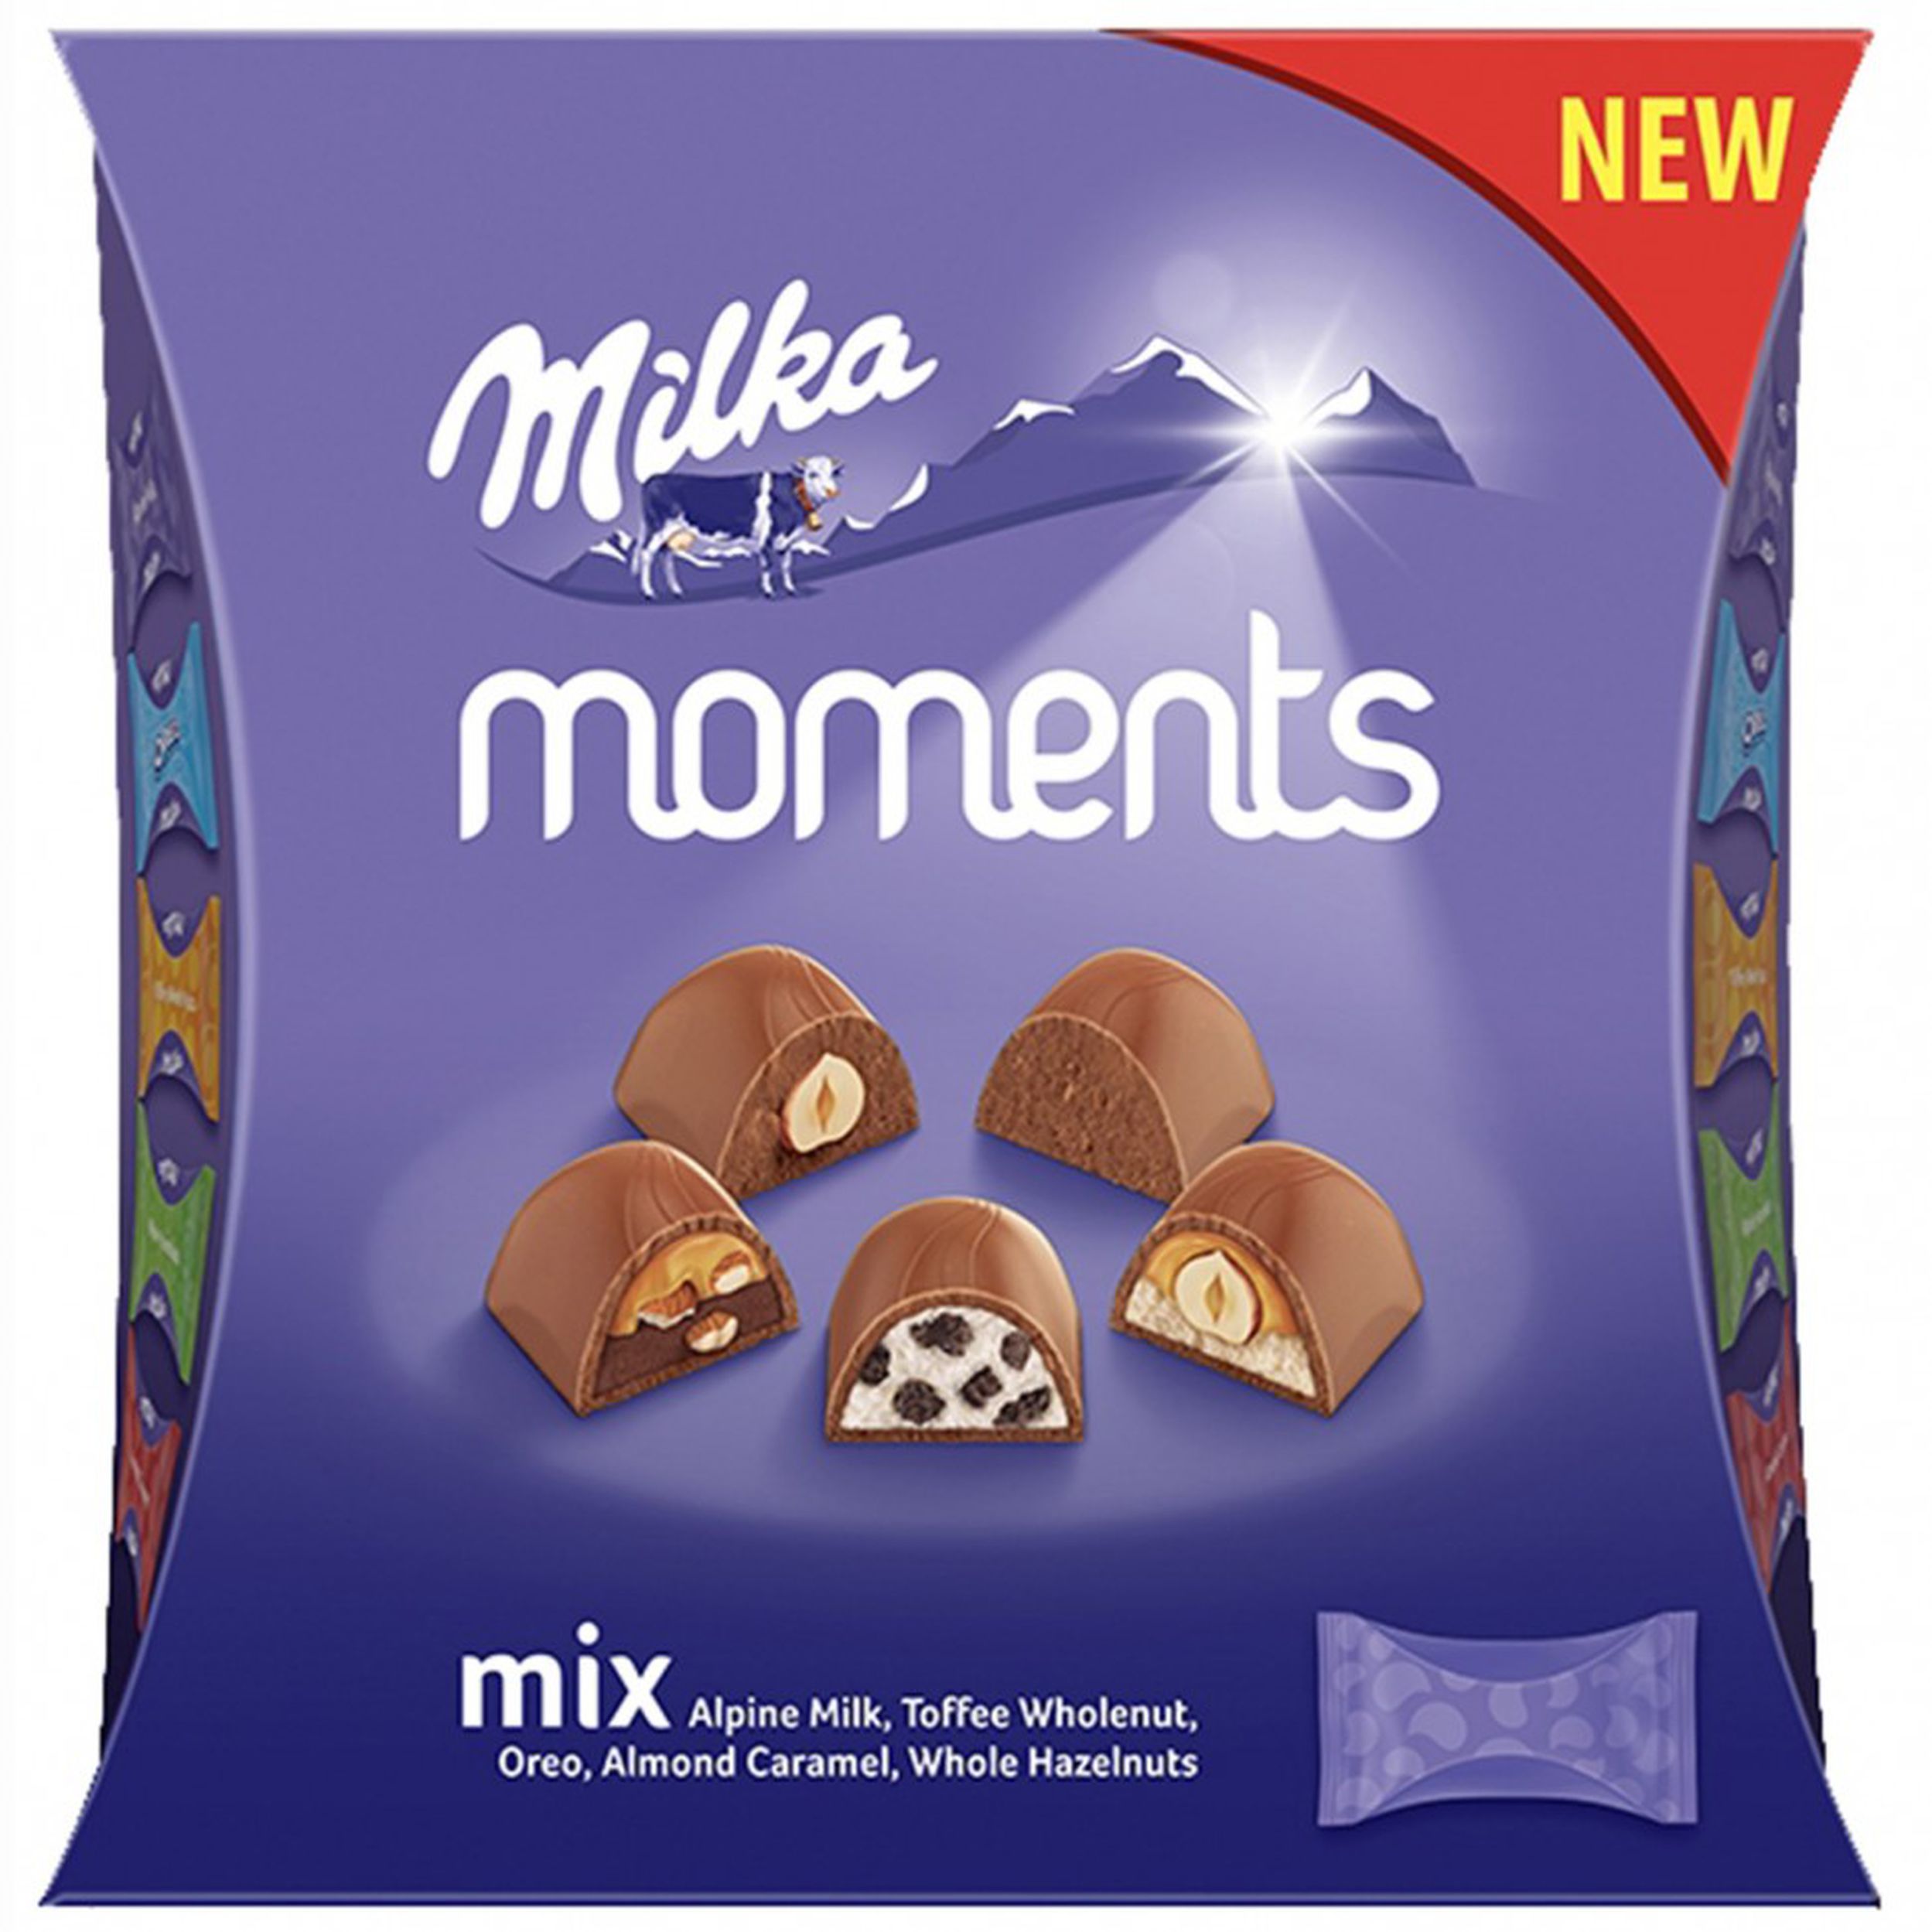 Милка набор купить. Шоколадные конфеты Милка moments мини микс 97гр. Набор конфет Milka микс. Набор конфет Milka moments Mix 97 г. Milka ассорти конфеты.